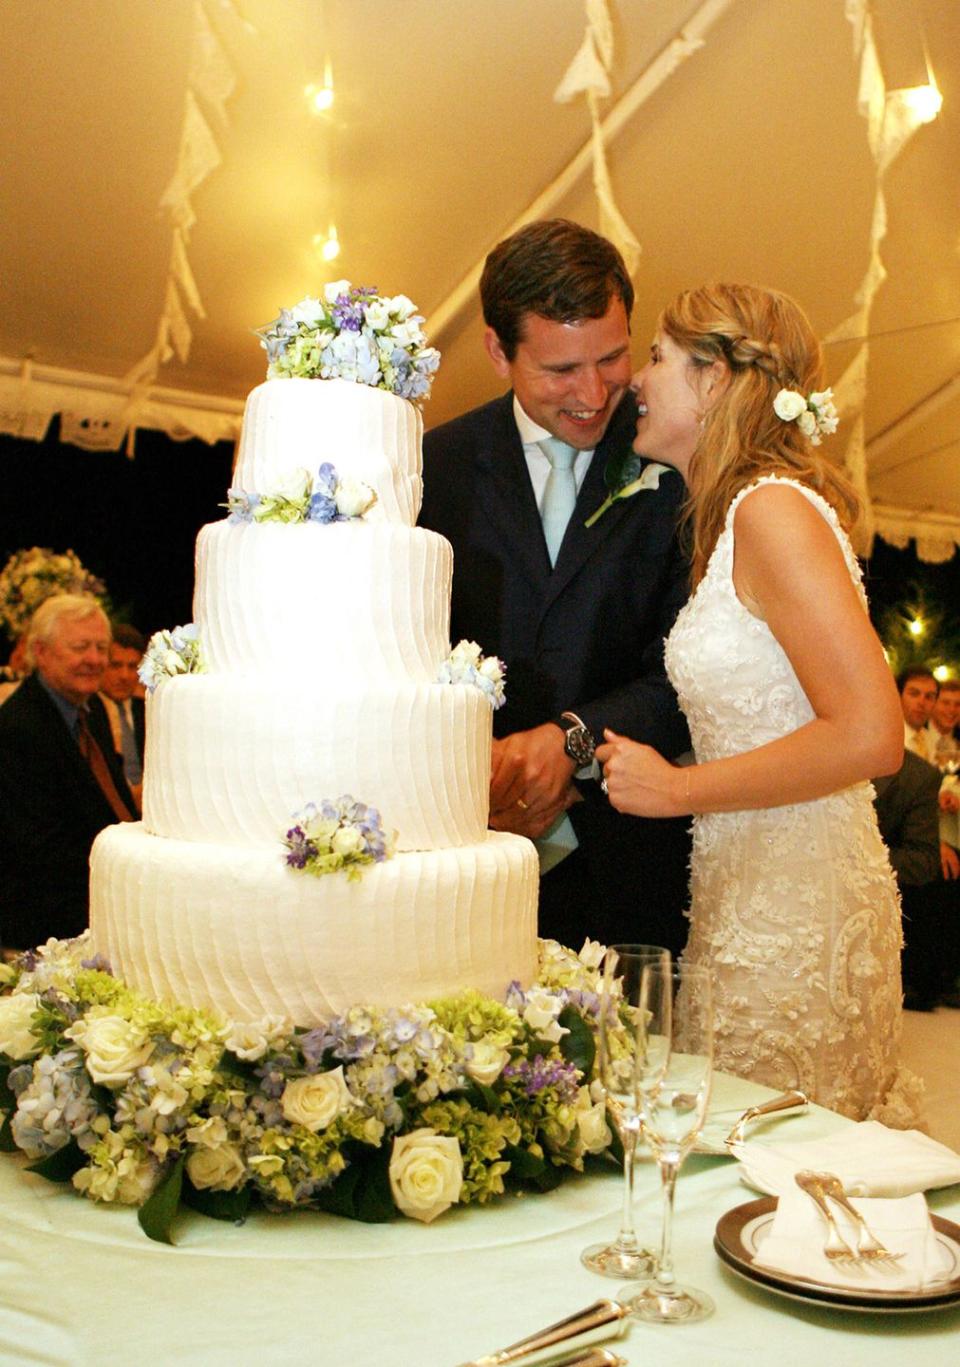 2008: Jenna Bush and Henry Hager